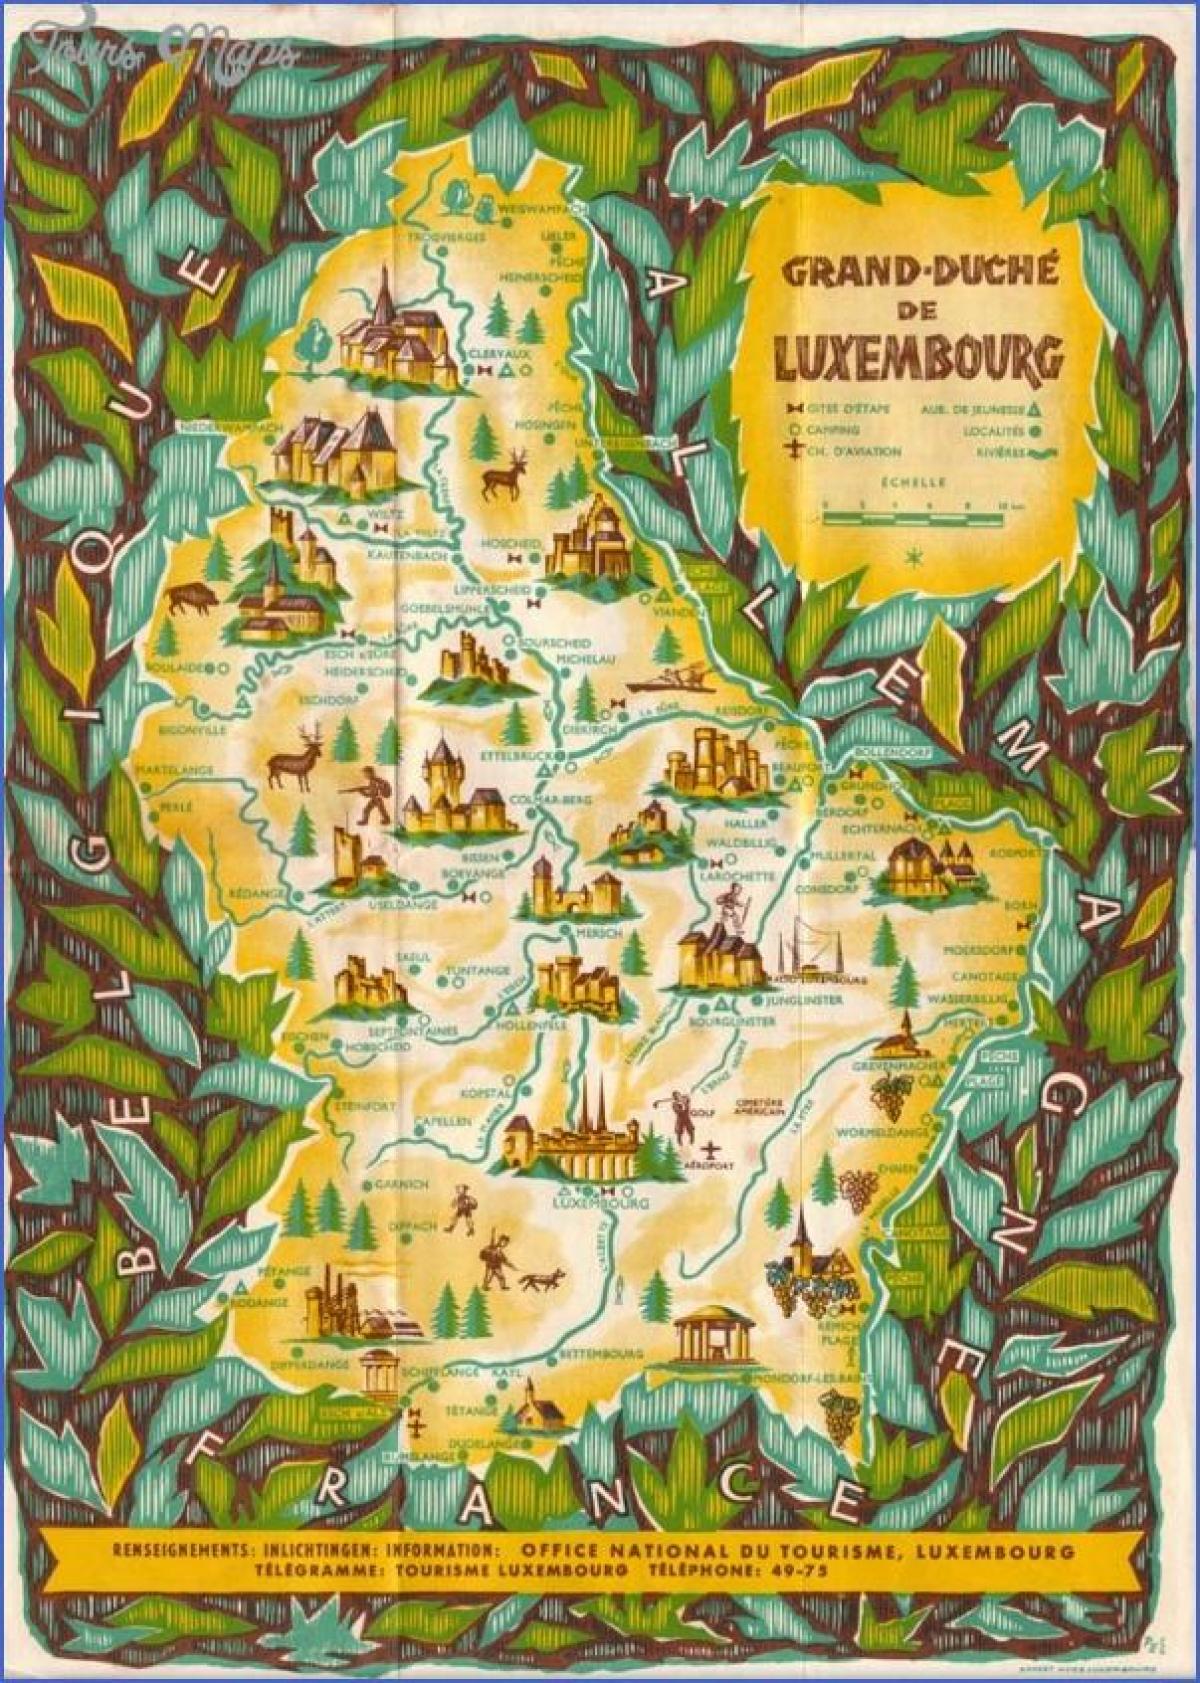 نقشہ لکسمبرگ کے سیاحت سائٹس کا سفر کے